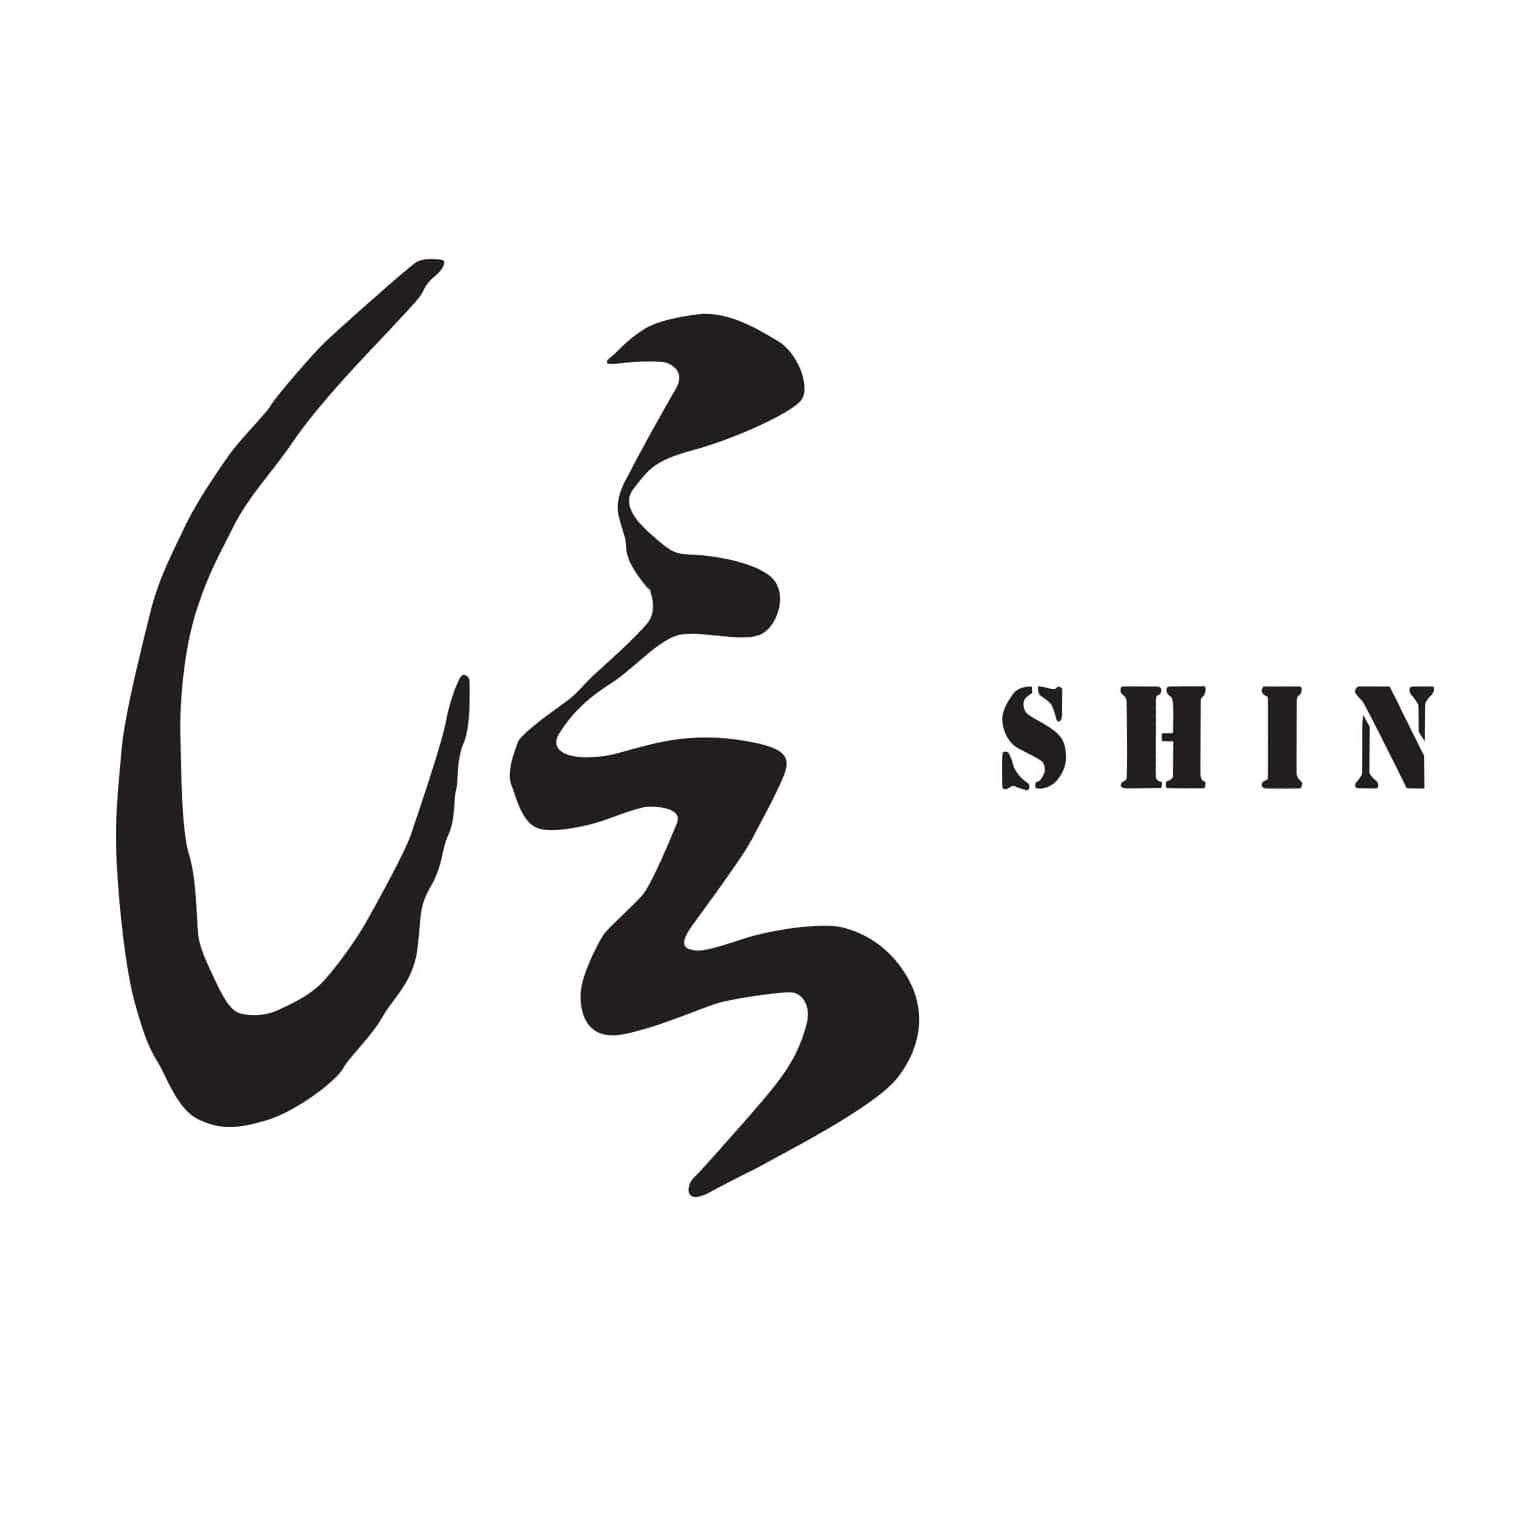 SHIN